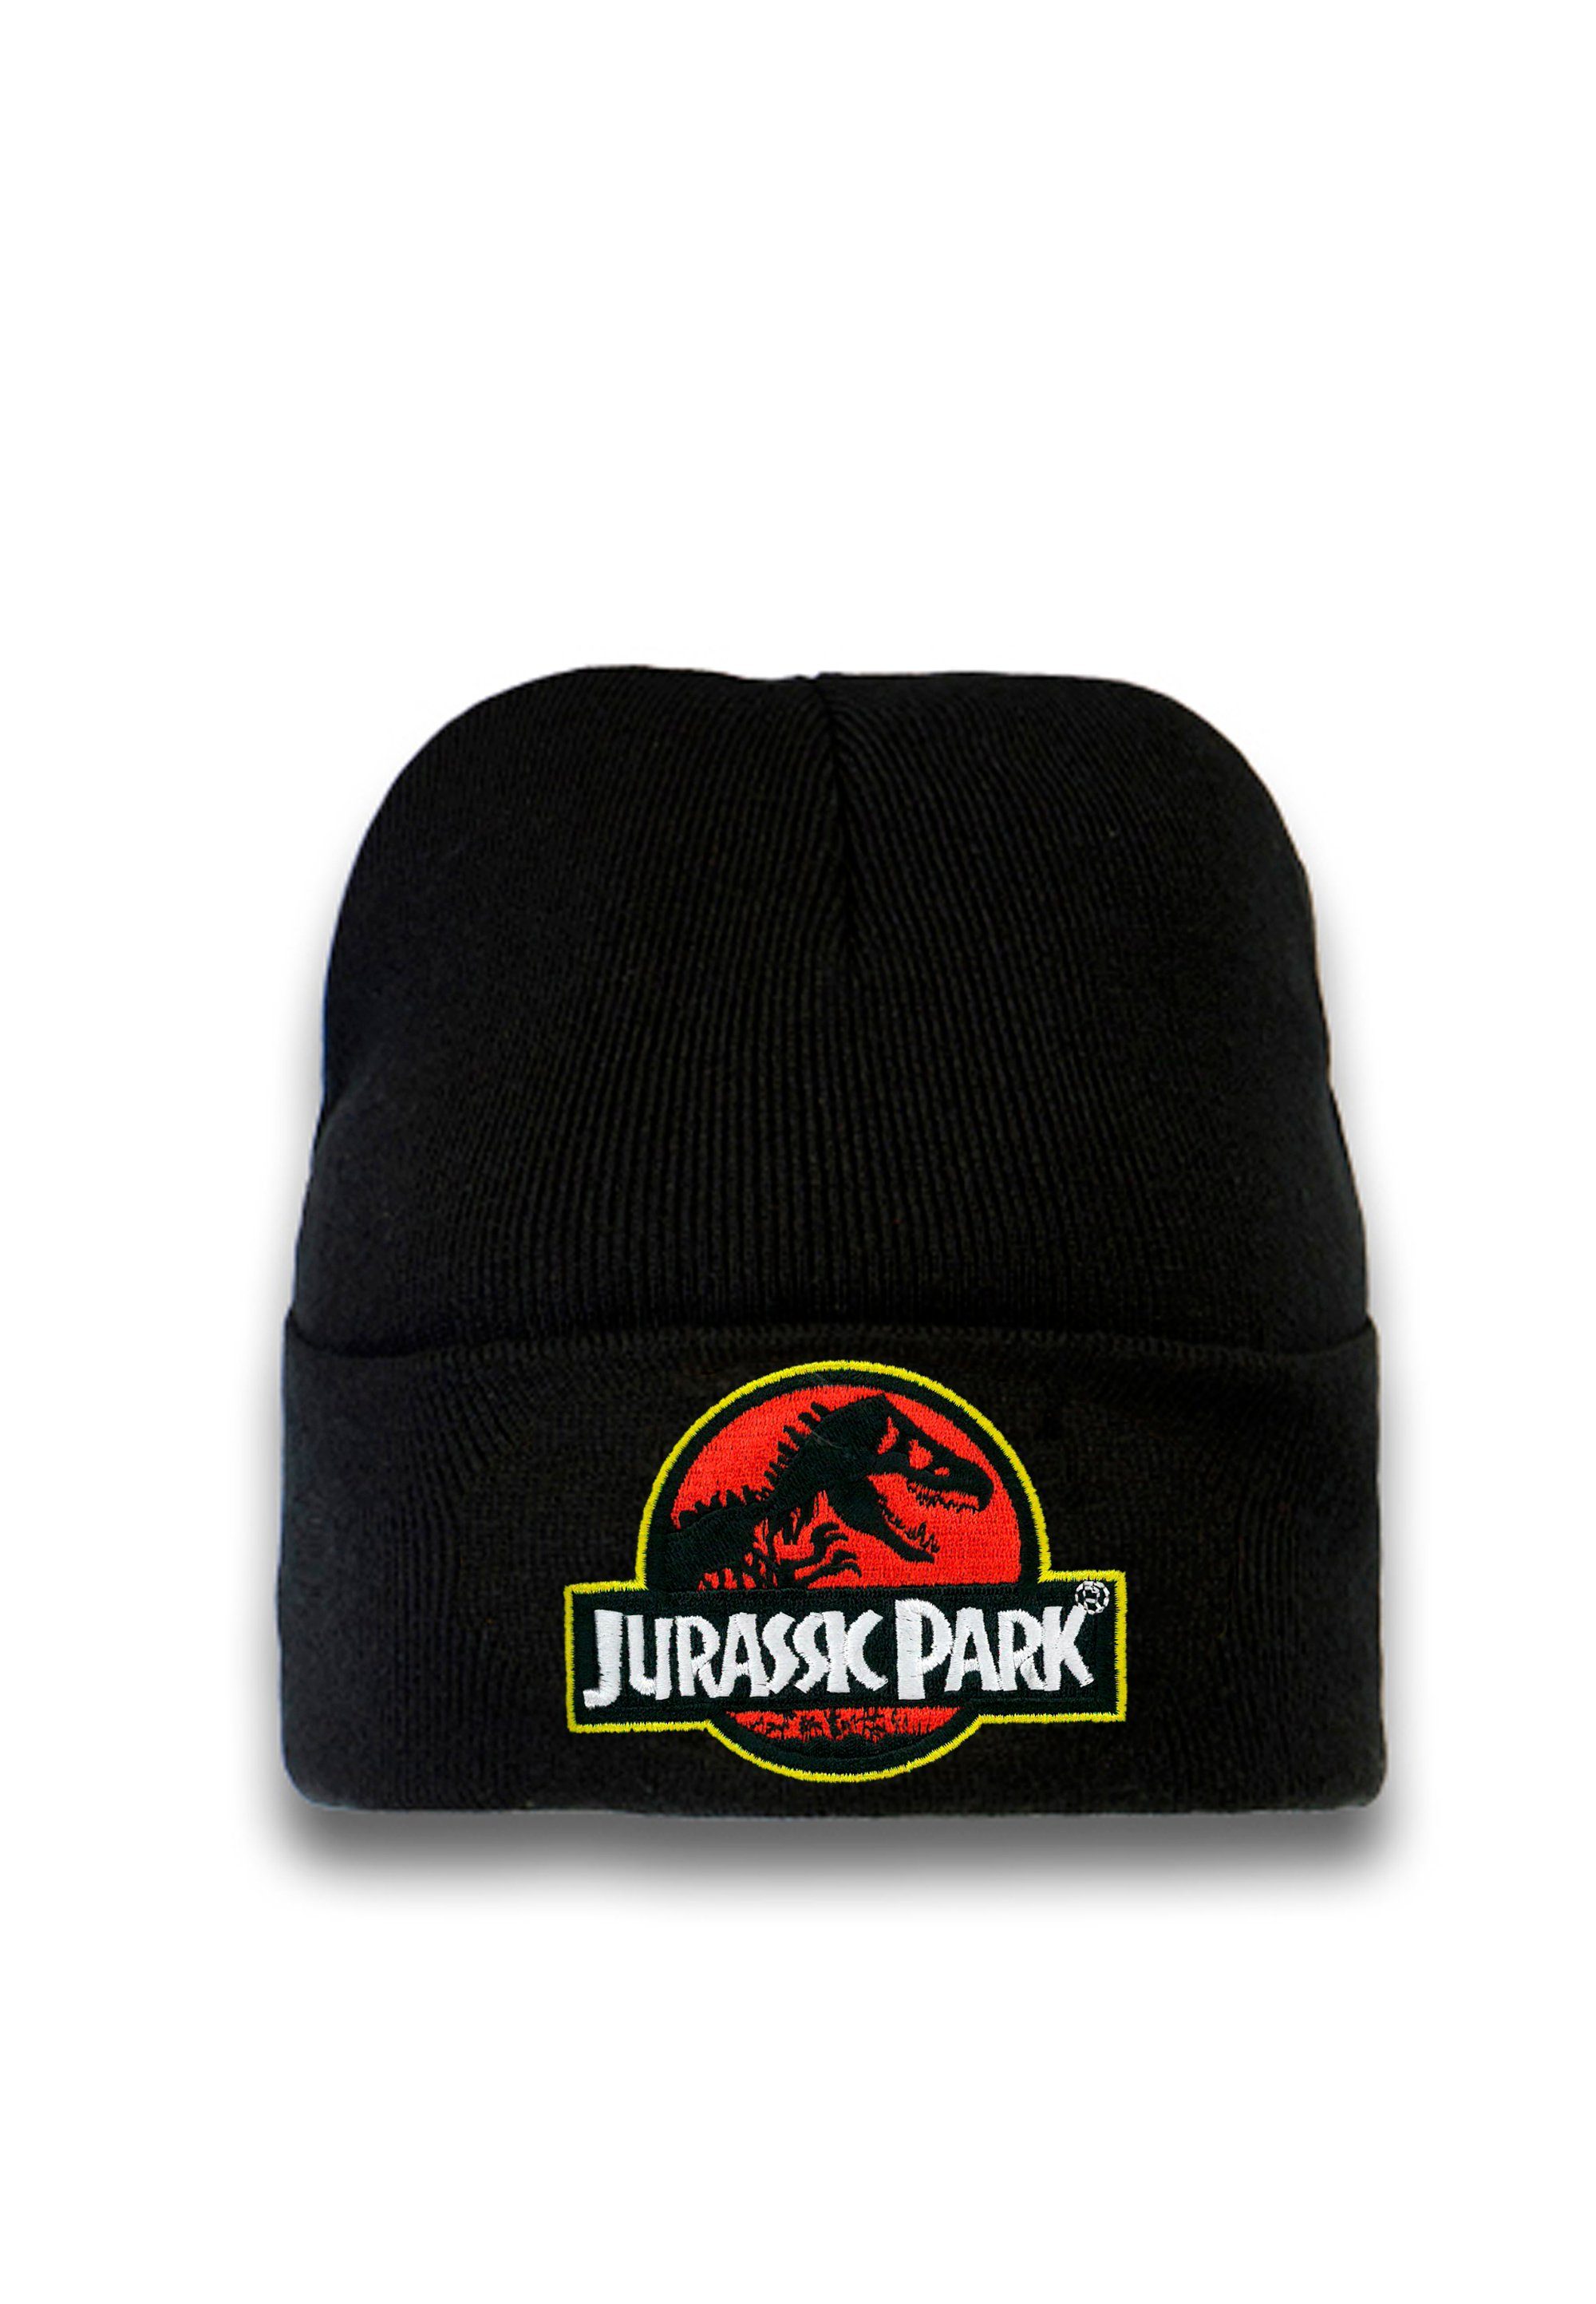 Park lizenziertem Jurassic Design mit Beanie LOGOSHIRT